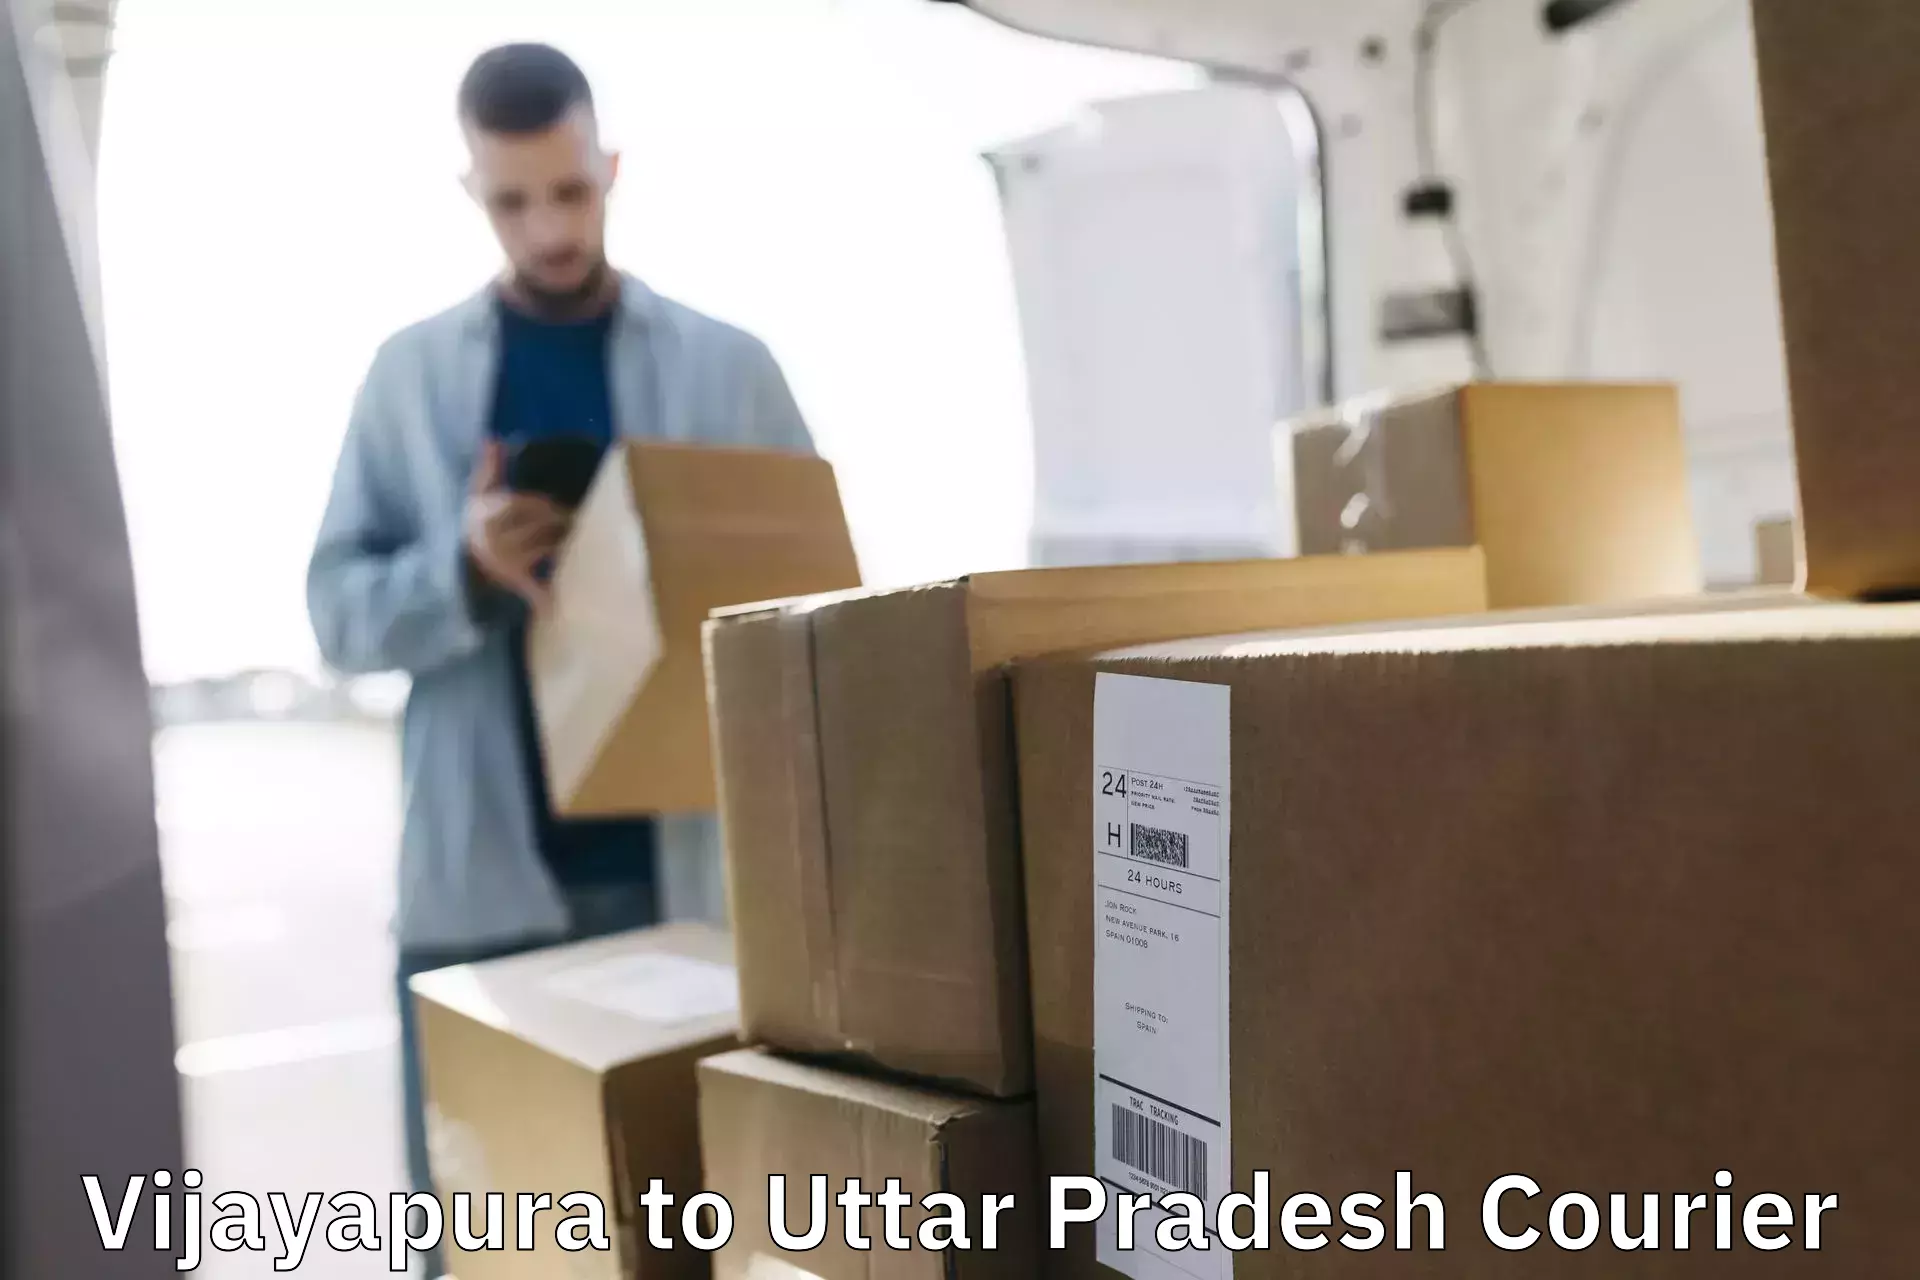 On-call courier service Vijayapura to Akbarpur